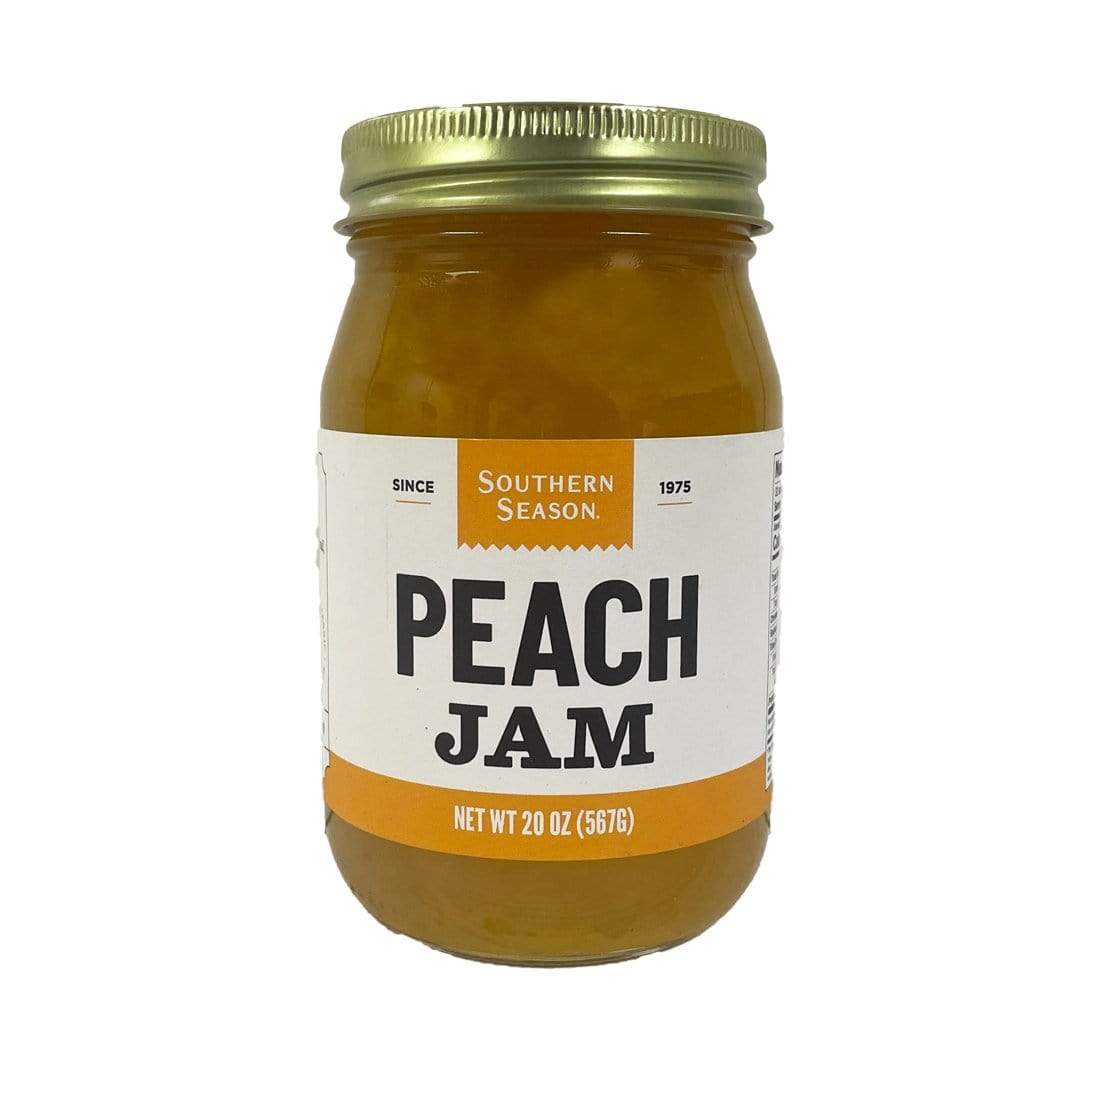 Southern Season Southern Season Peach Jam 20 oz